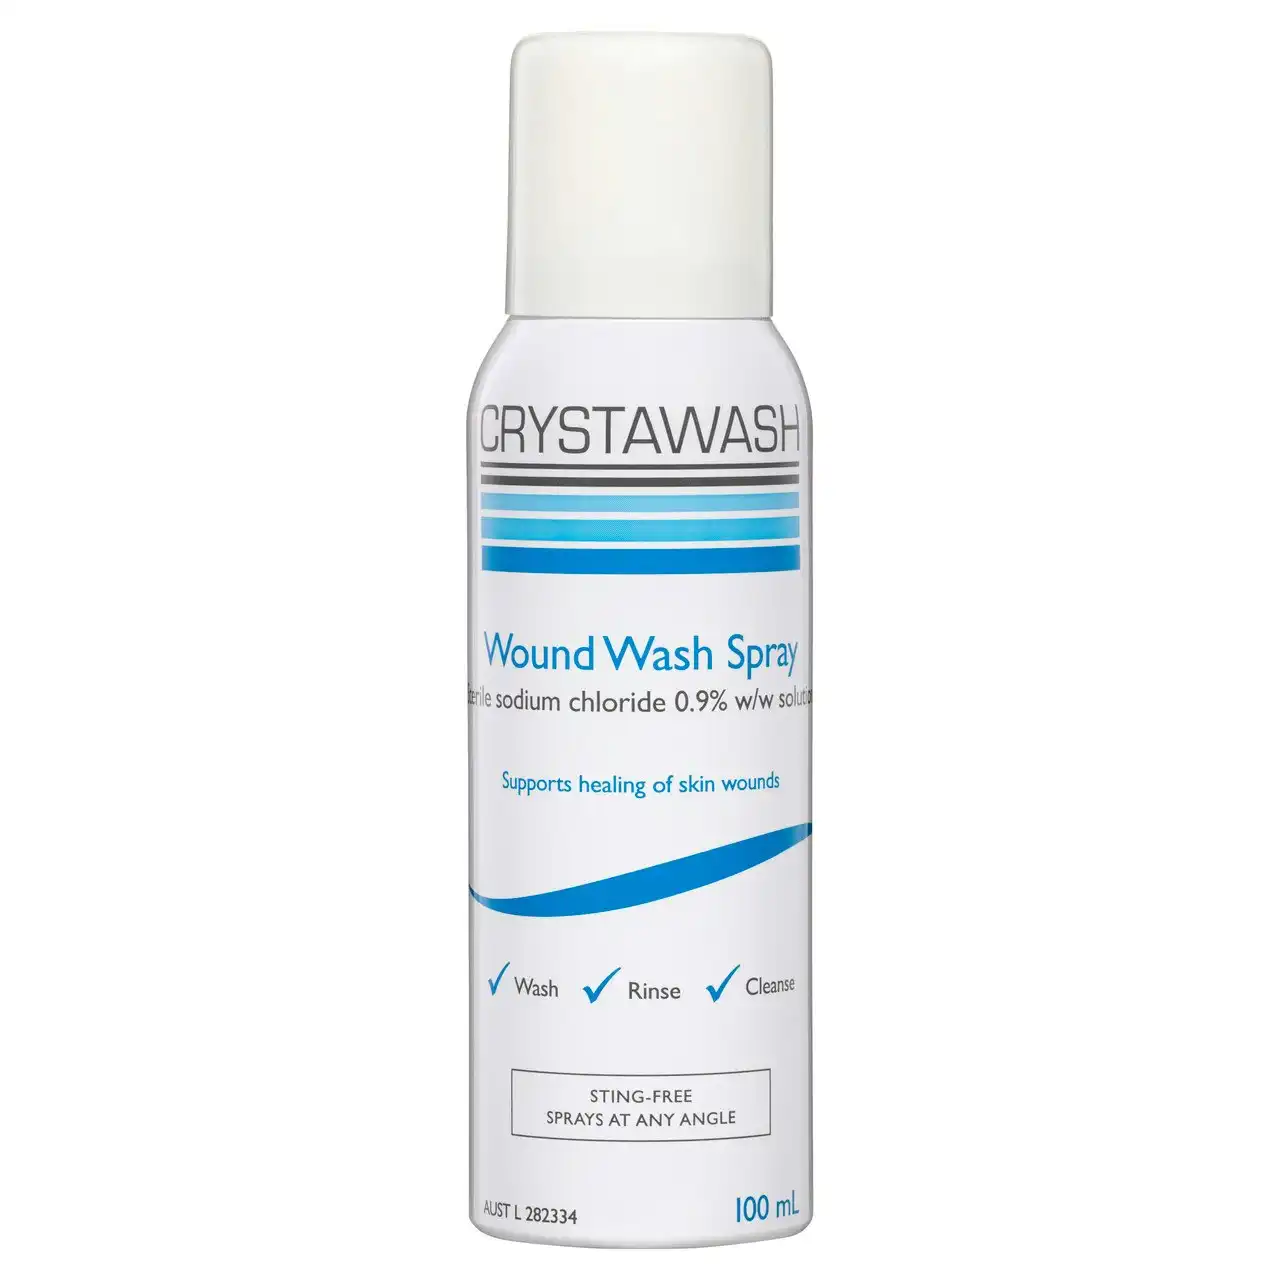 Crystawash Wound Wash Spray 100mL